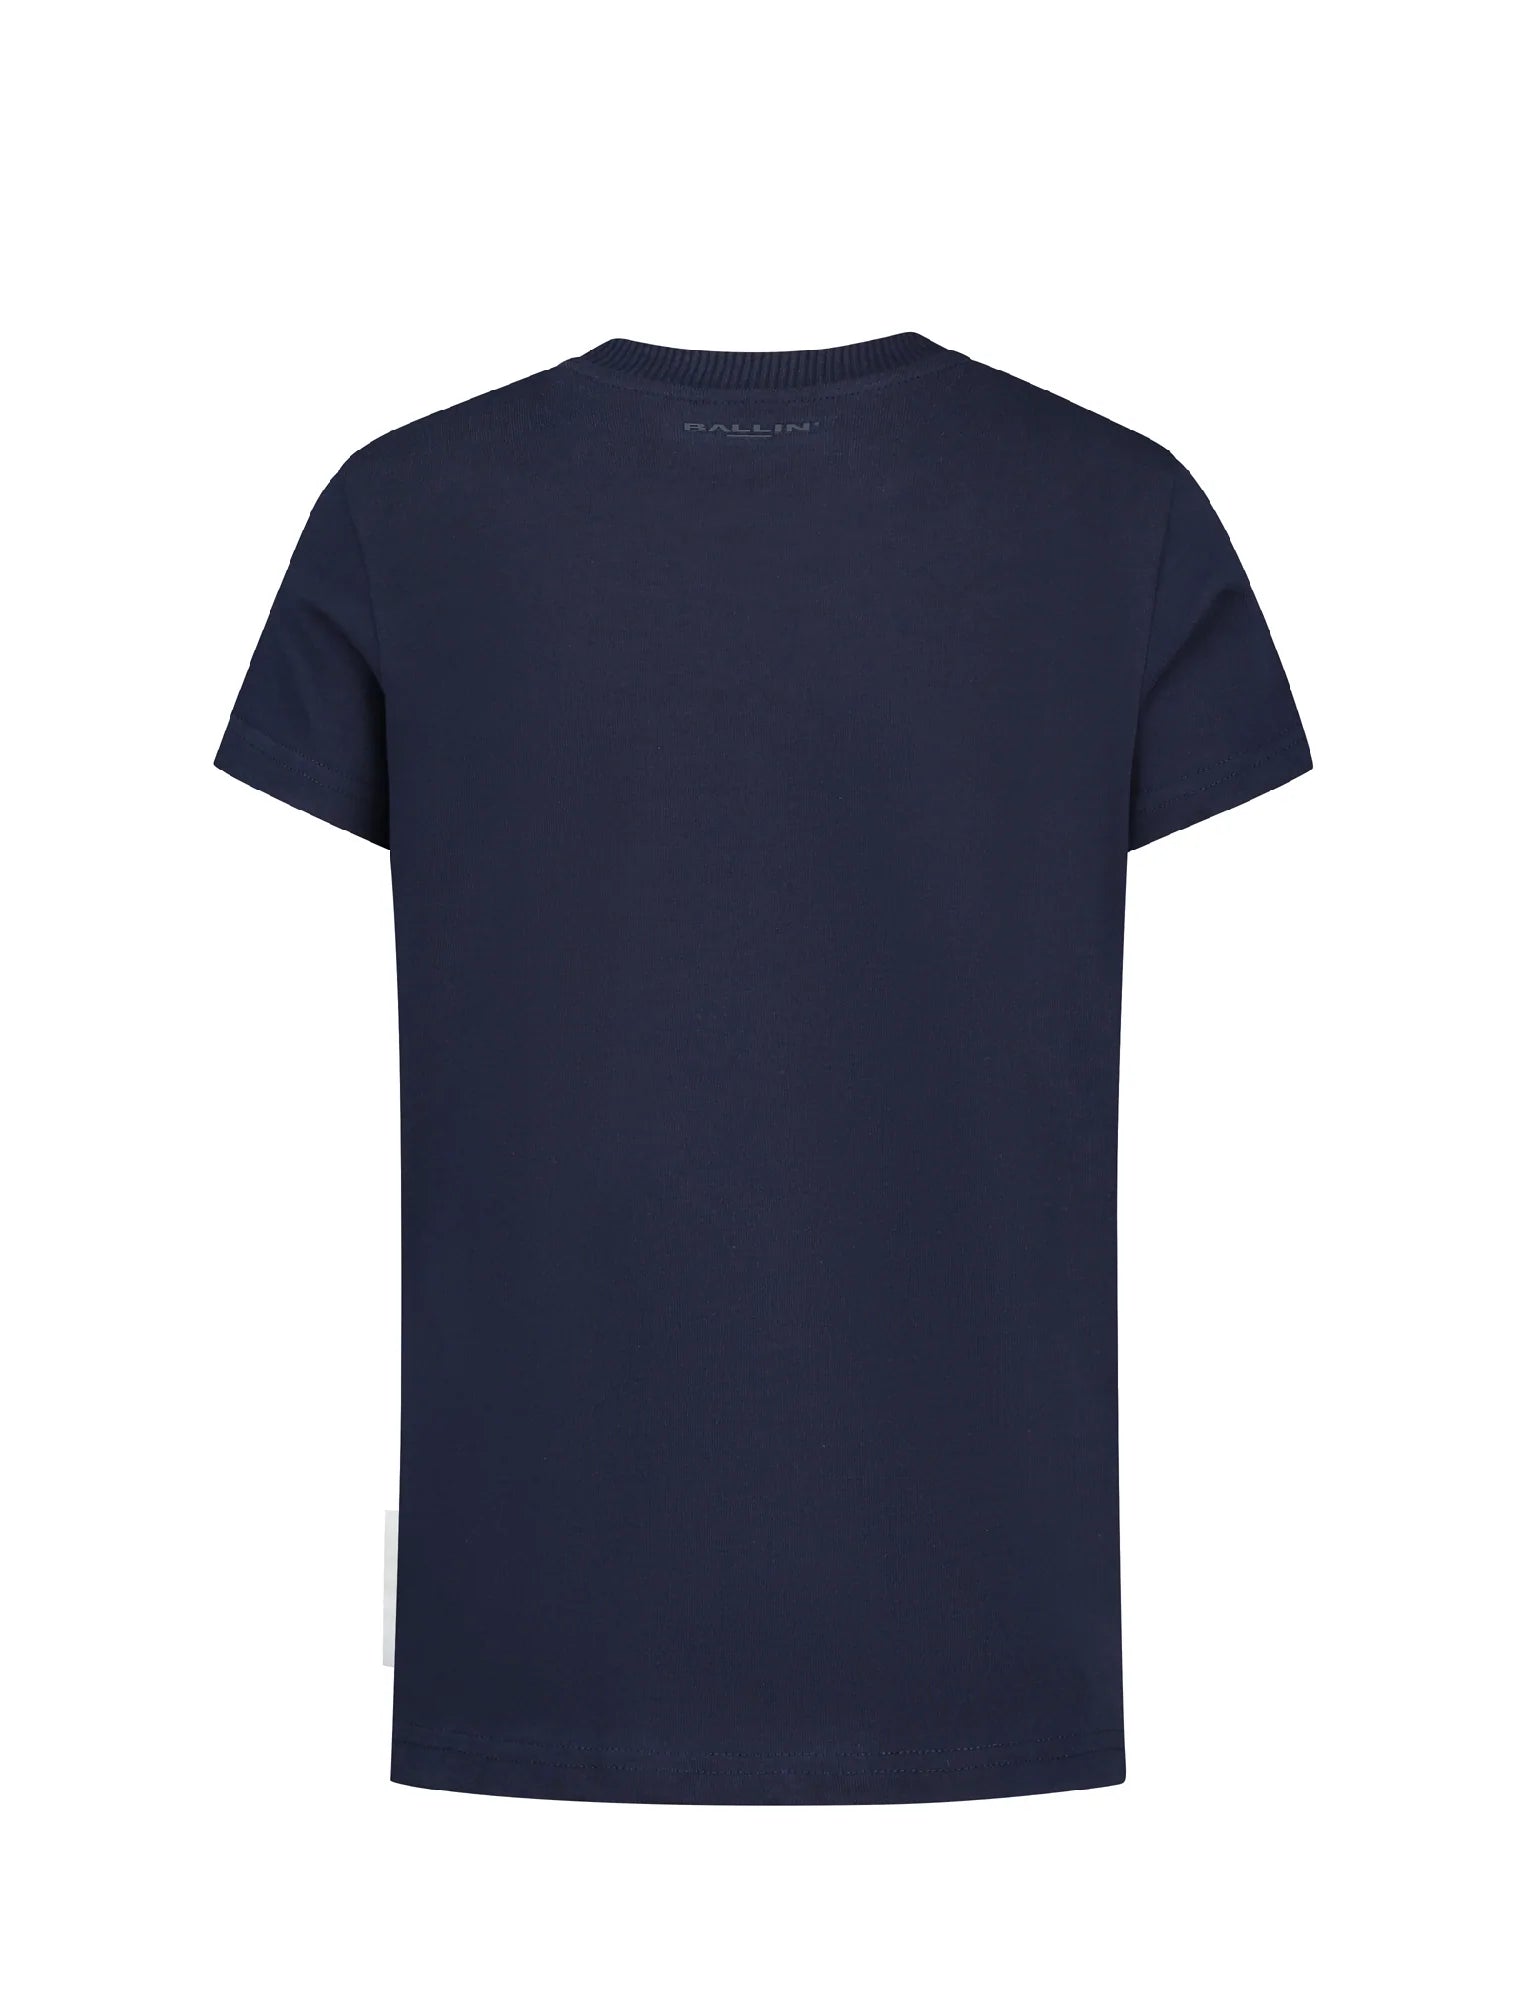 Unisexs T-shirt van Ballin Amsterdam in de kleur Navy in maat 176.